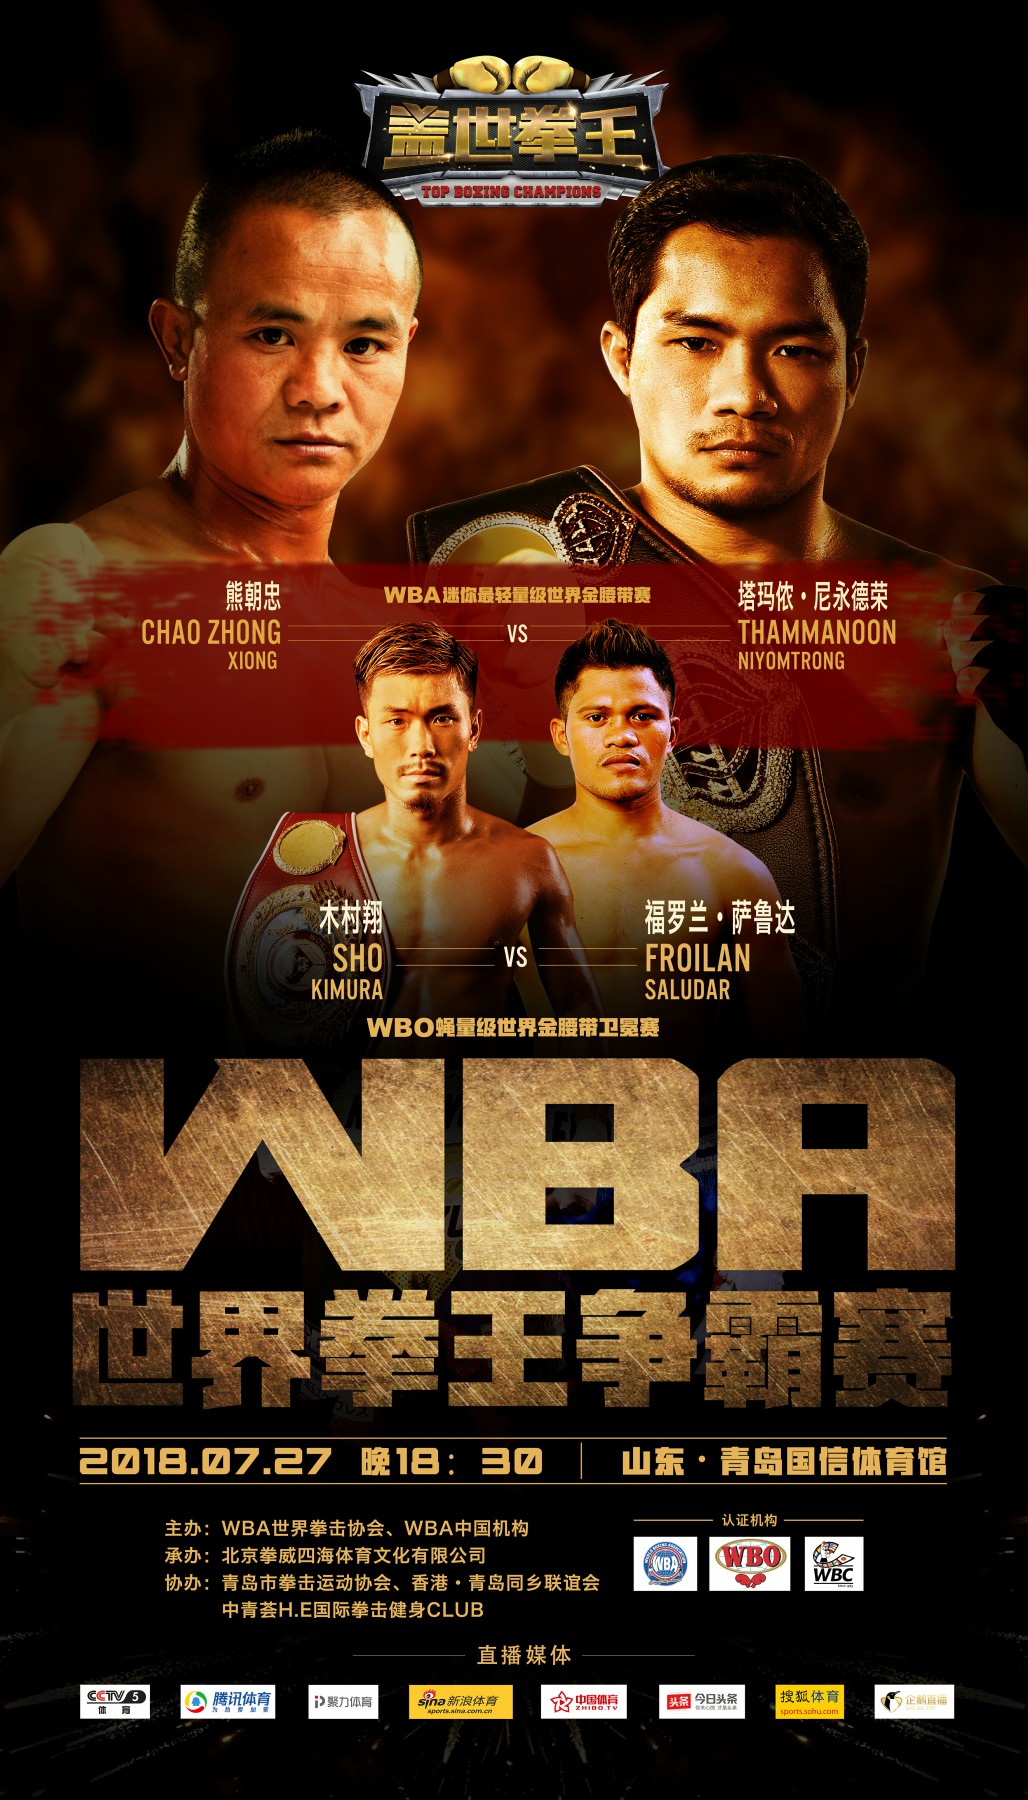 中国拳击史上最强对决： 熊朝忠七战金腰带迎劲敌，木村翔同台卫冕！